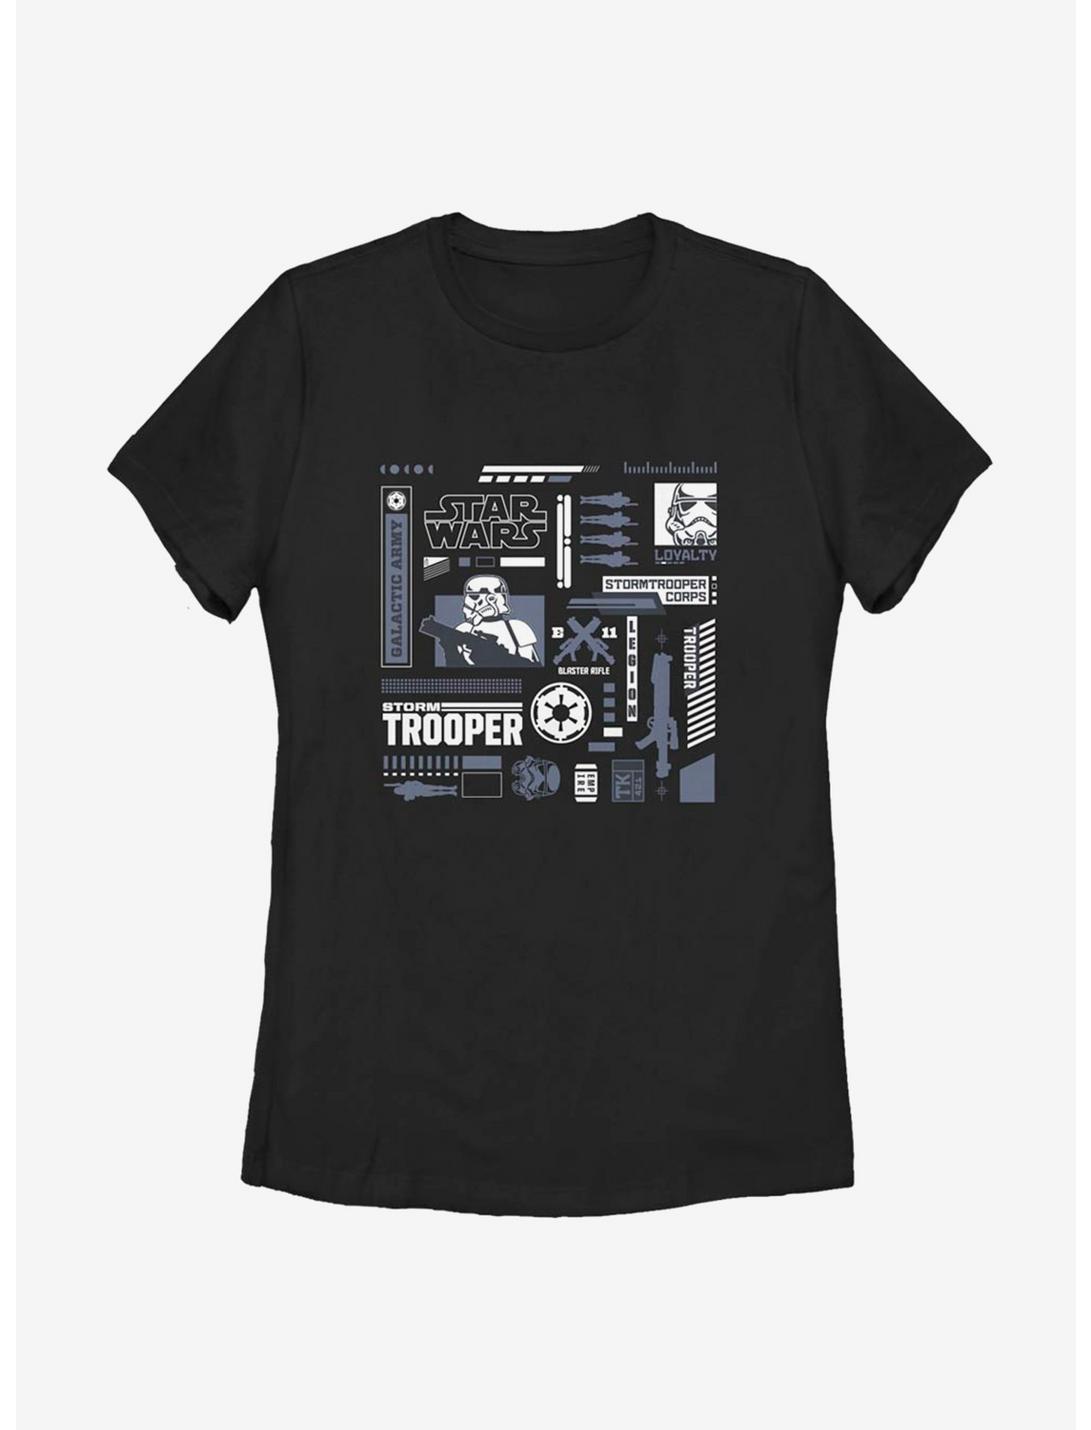 Star Wars Trooper Elements Womens T-Shirt, BLACK, hi-res